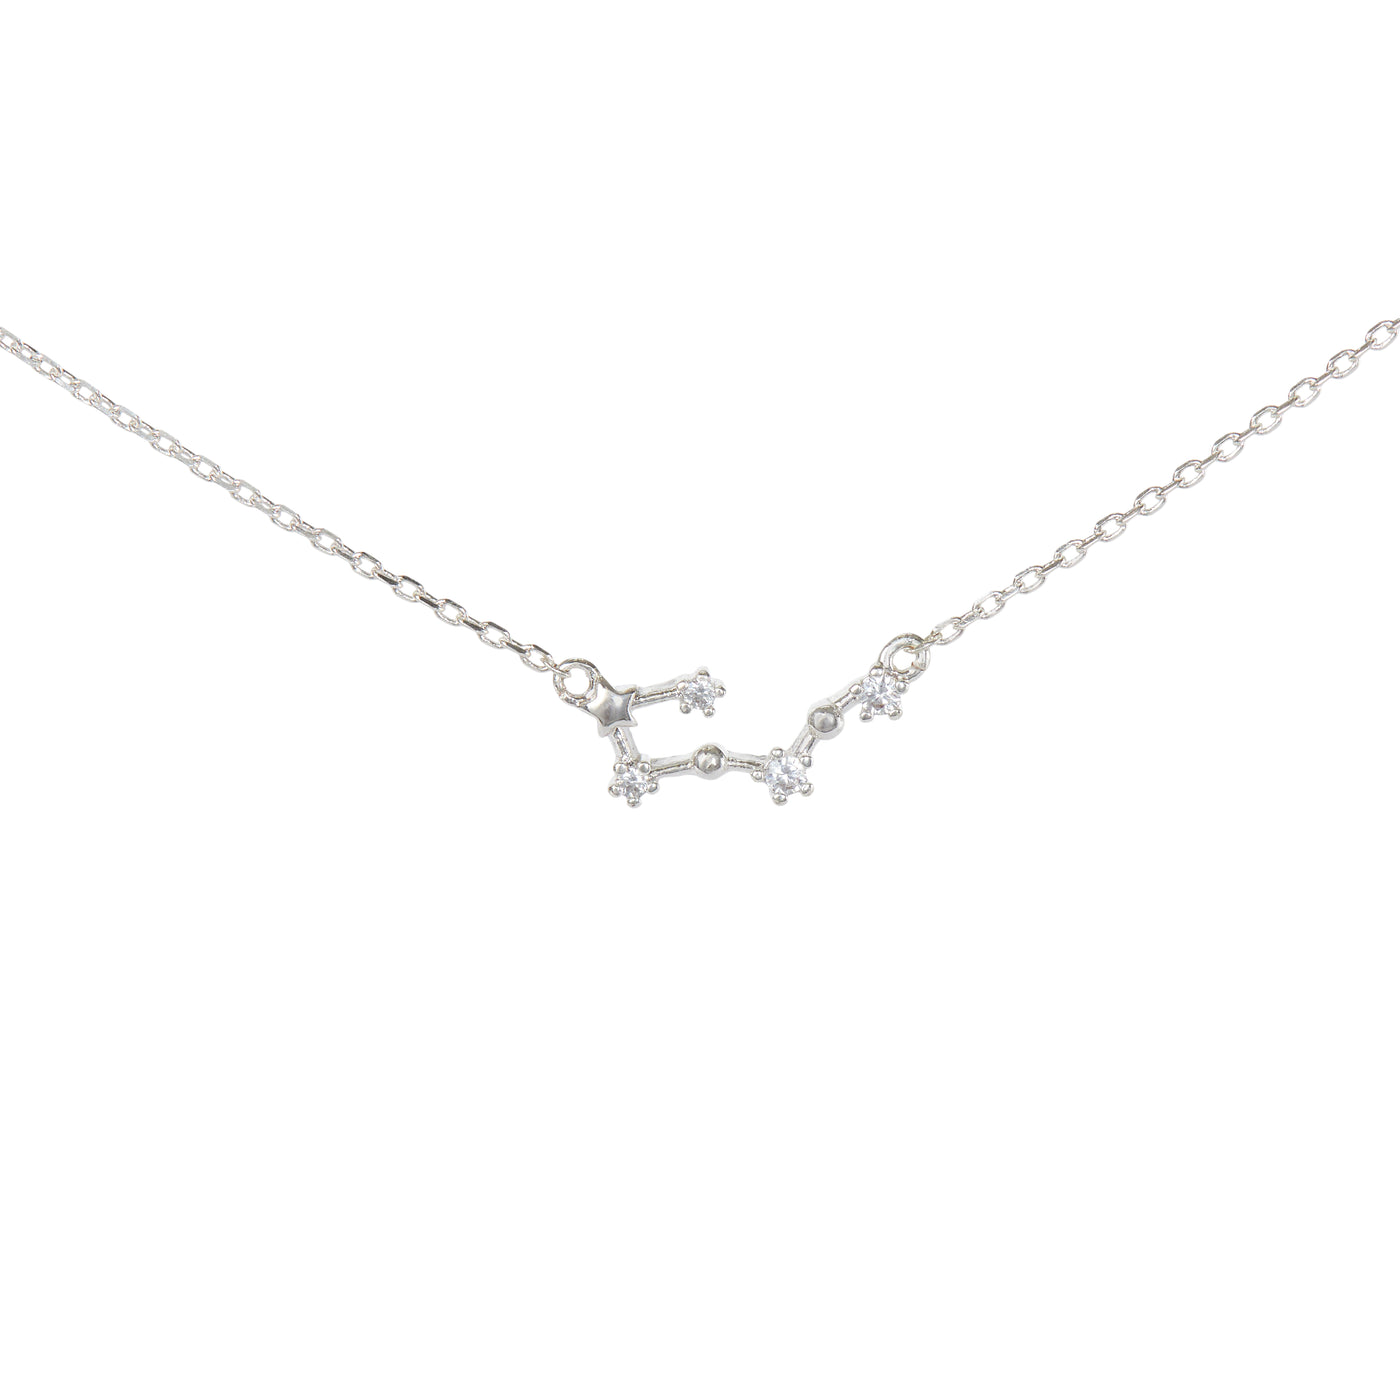 Taurus Constellation Necklace